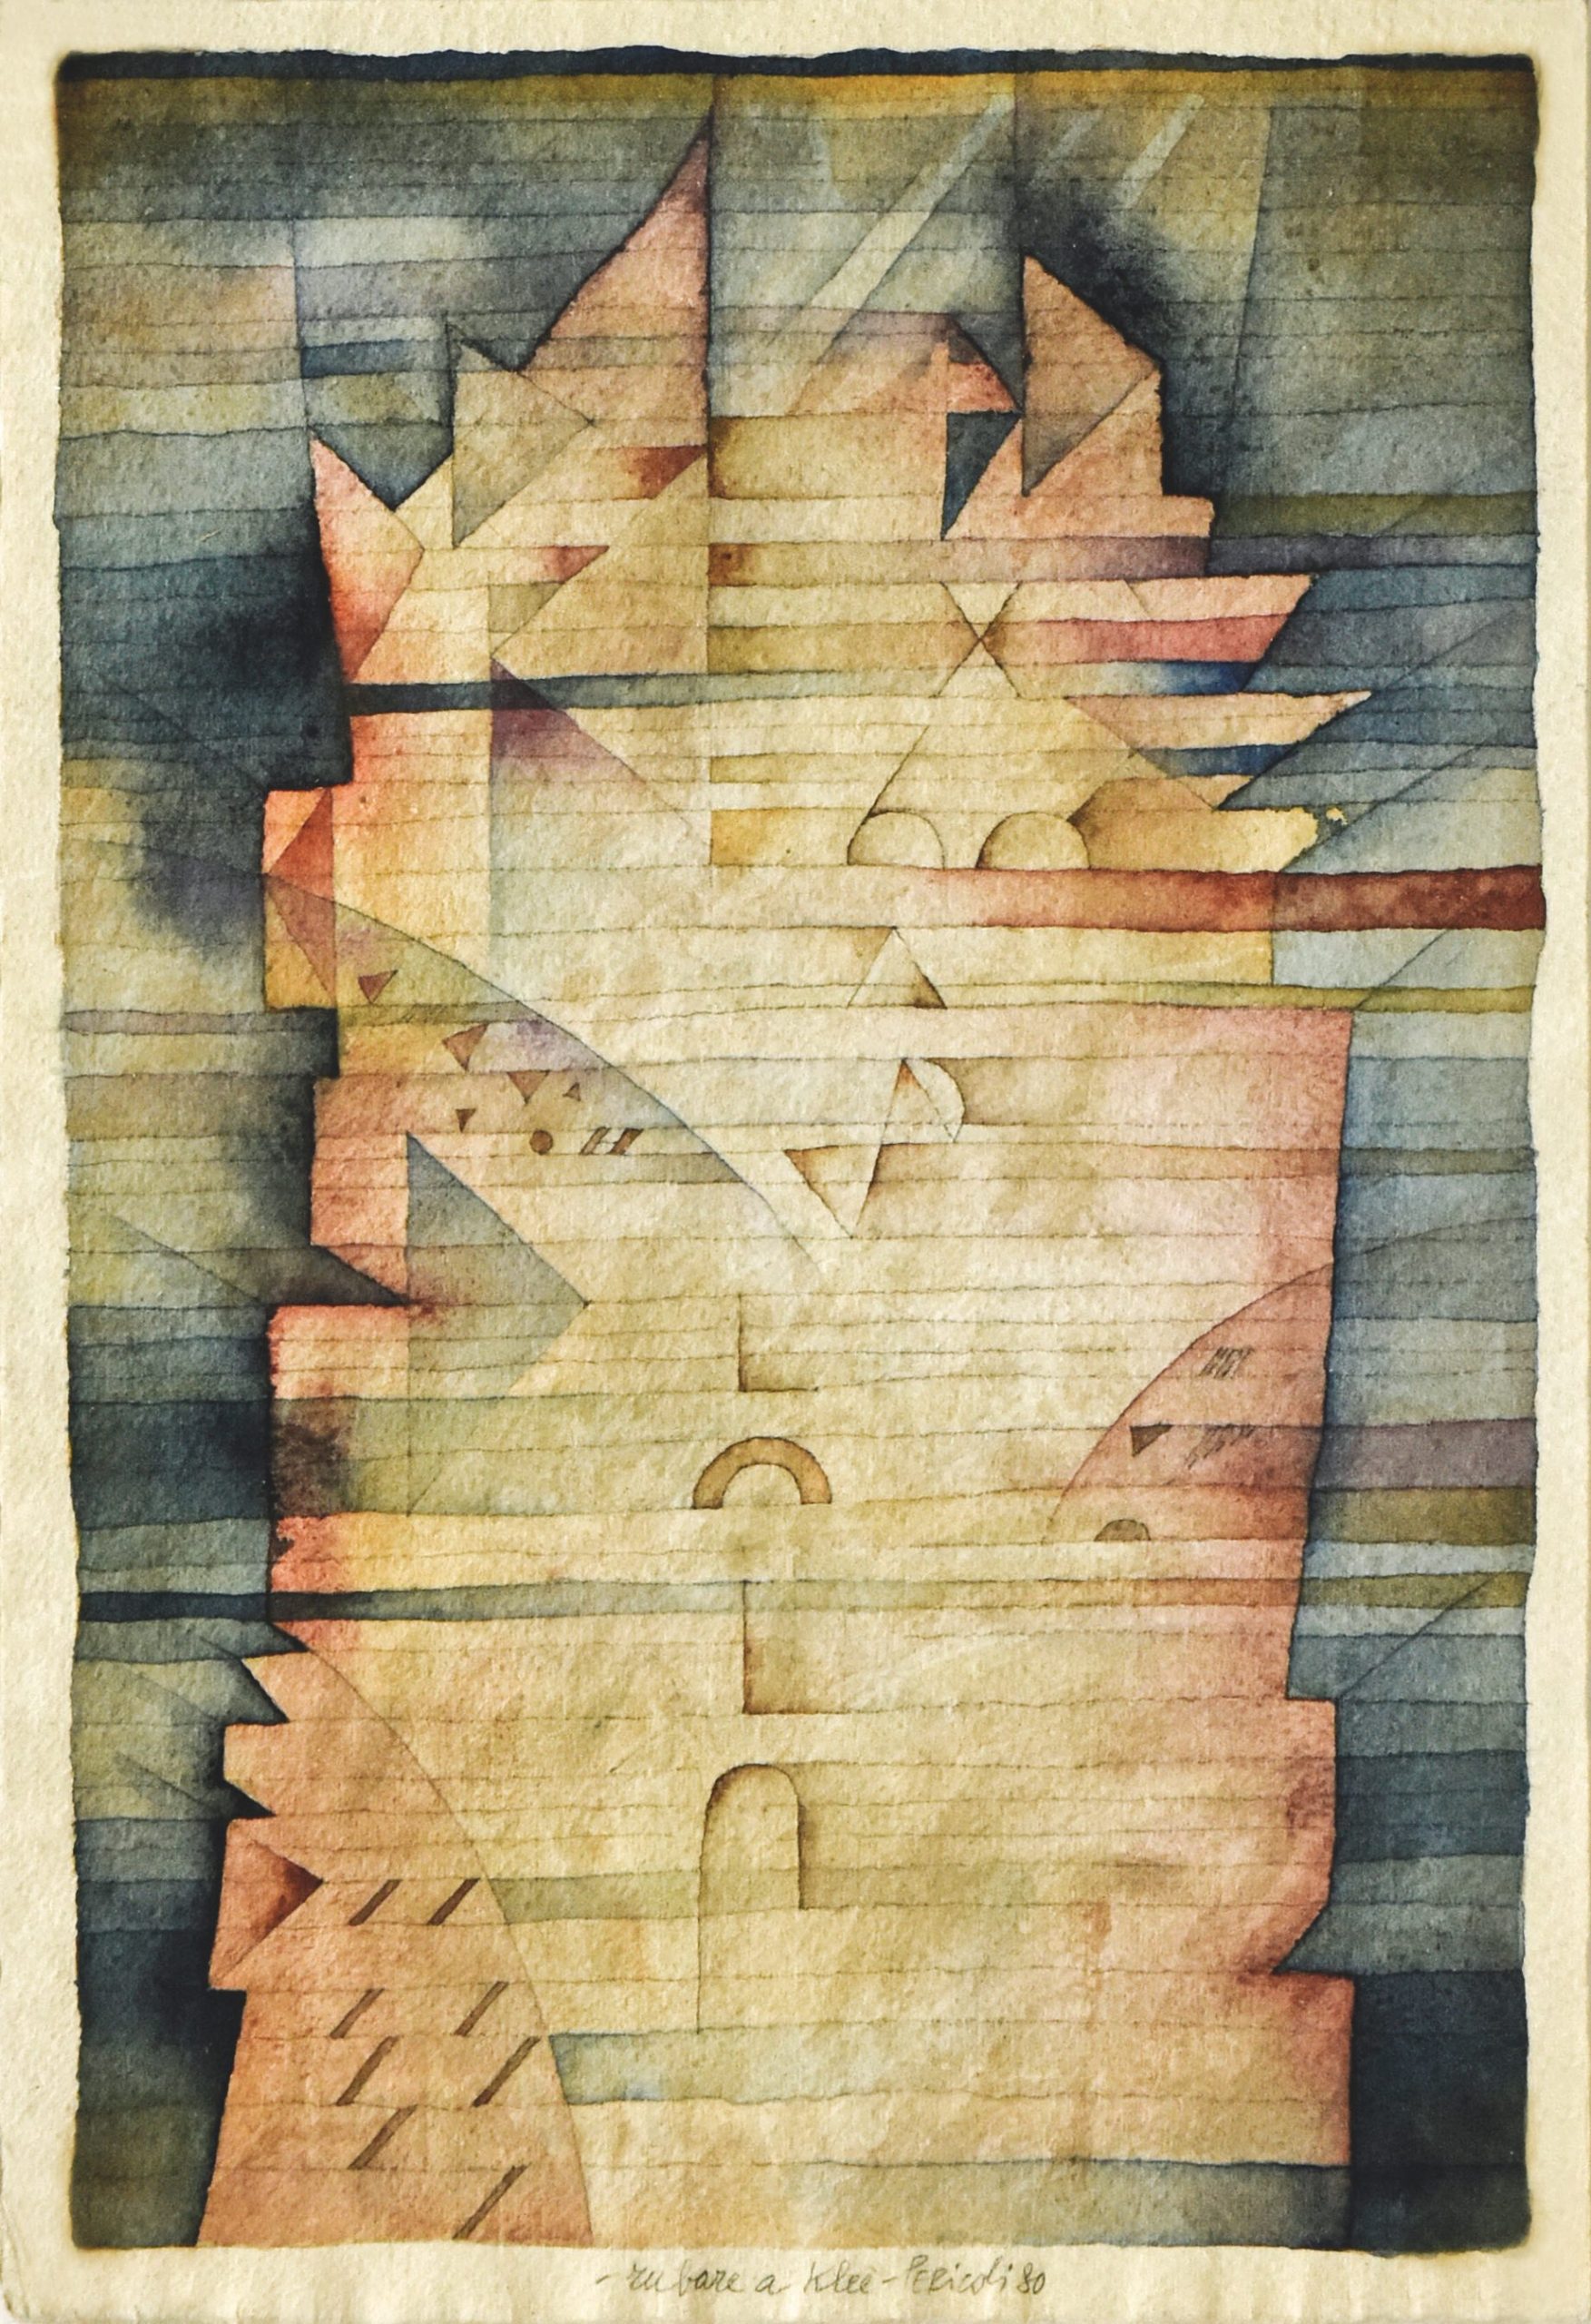 Tullio Pericoli. Rubare a Klee, 1980 Acquerello e matita su carta, 45 x 28 cm